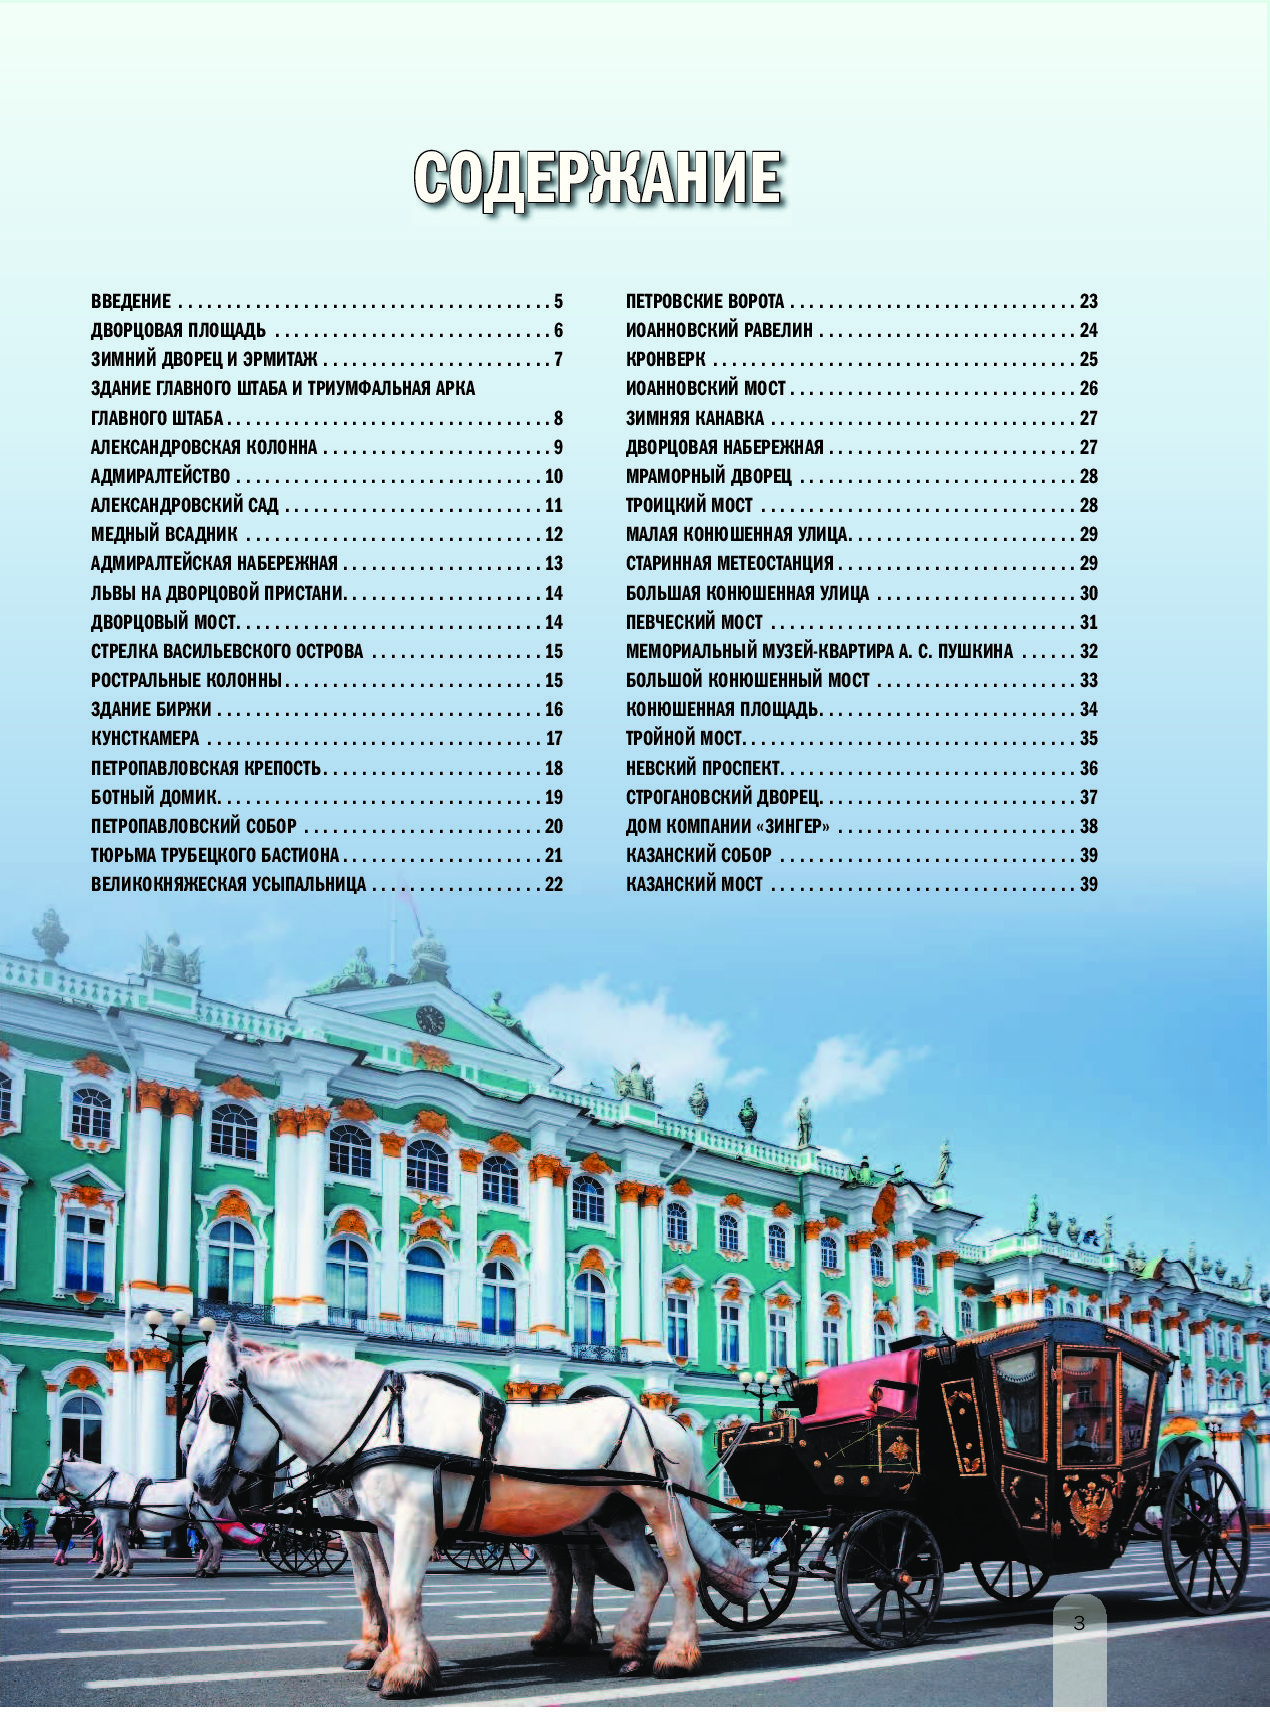 Компании петербурга список